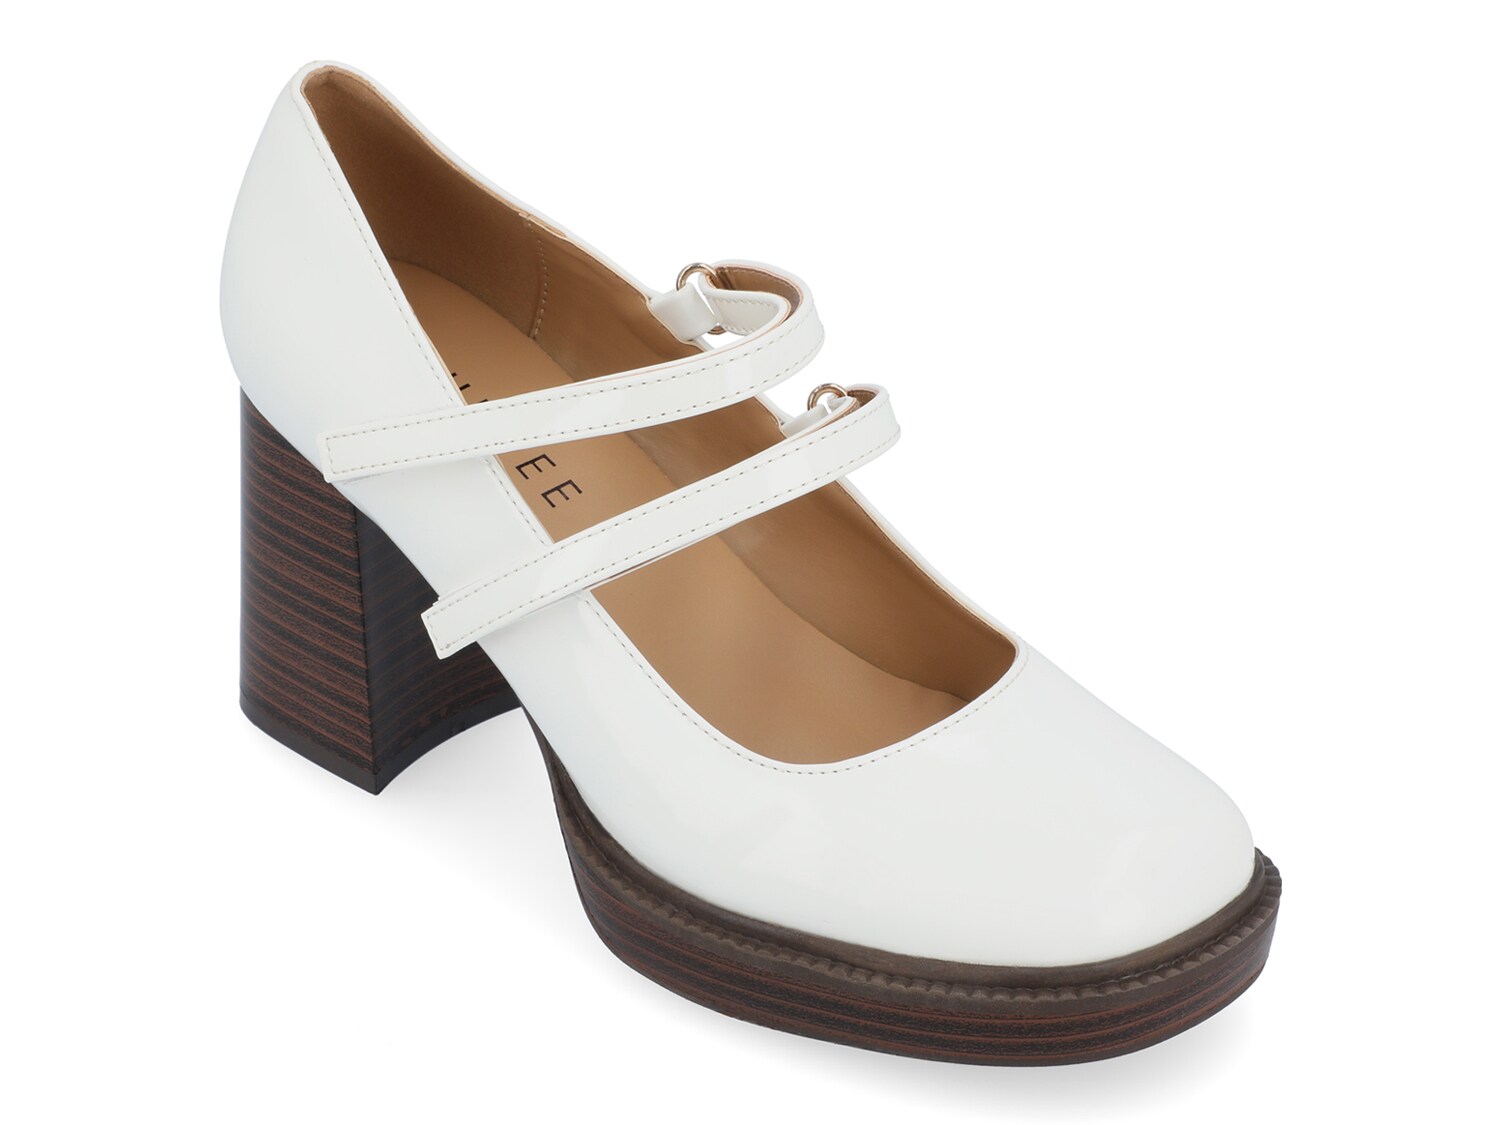 Туфли на платформе Journee Collection Shasta, молочный туфли лодочки женские на платформе классические свадебные туфли мэри джейн средний каблук черные белые 2021